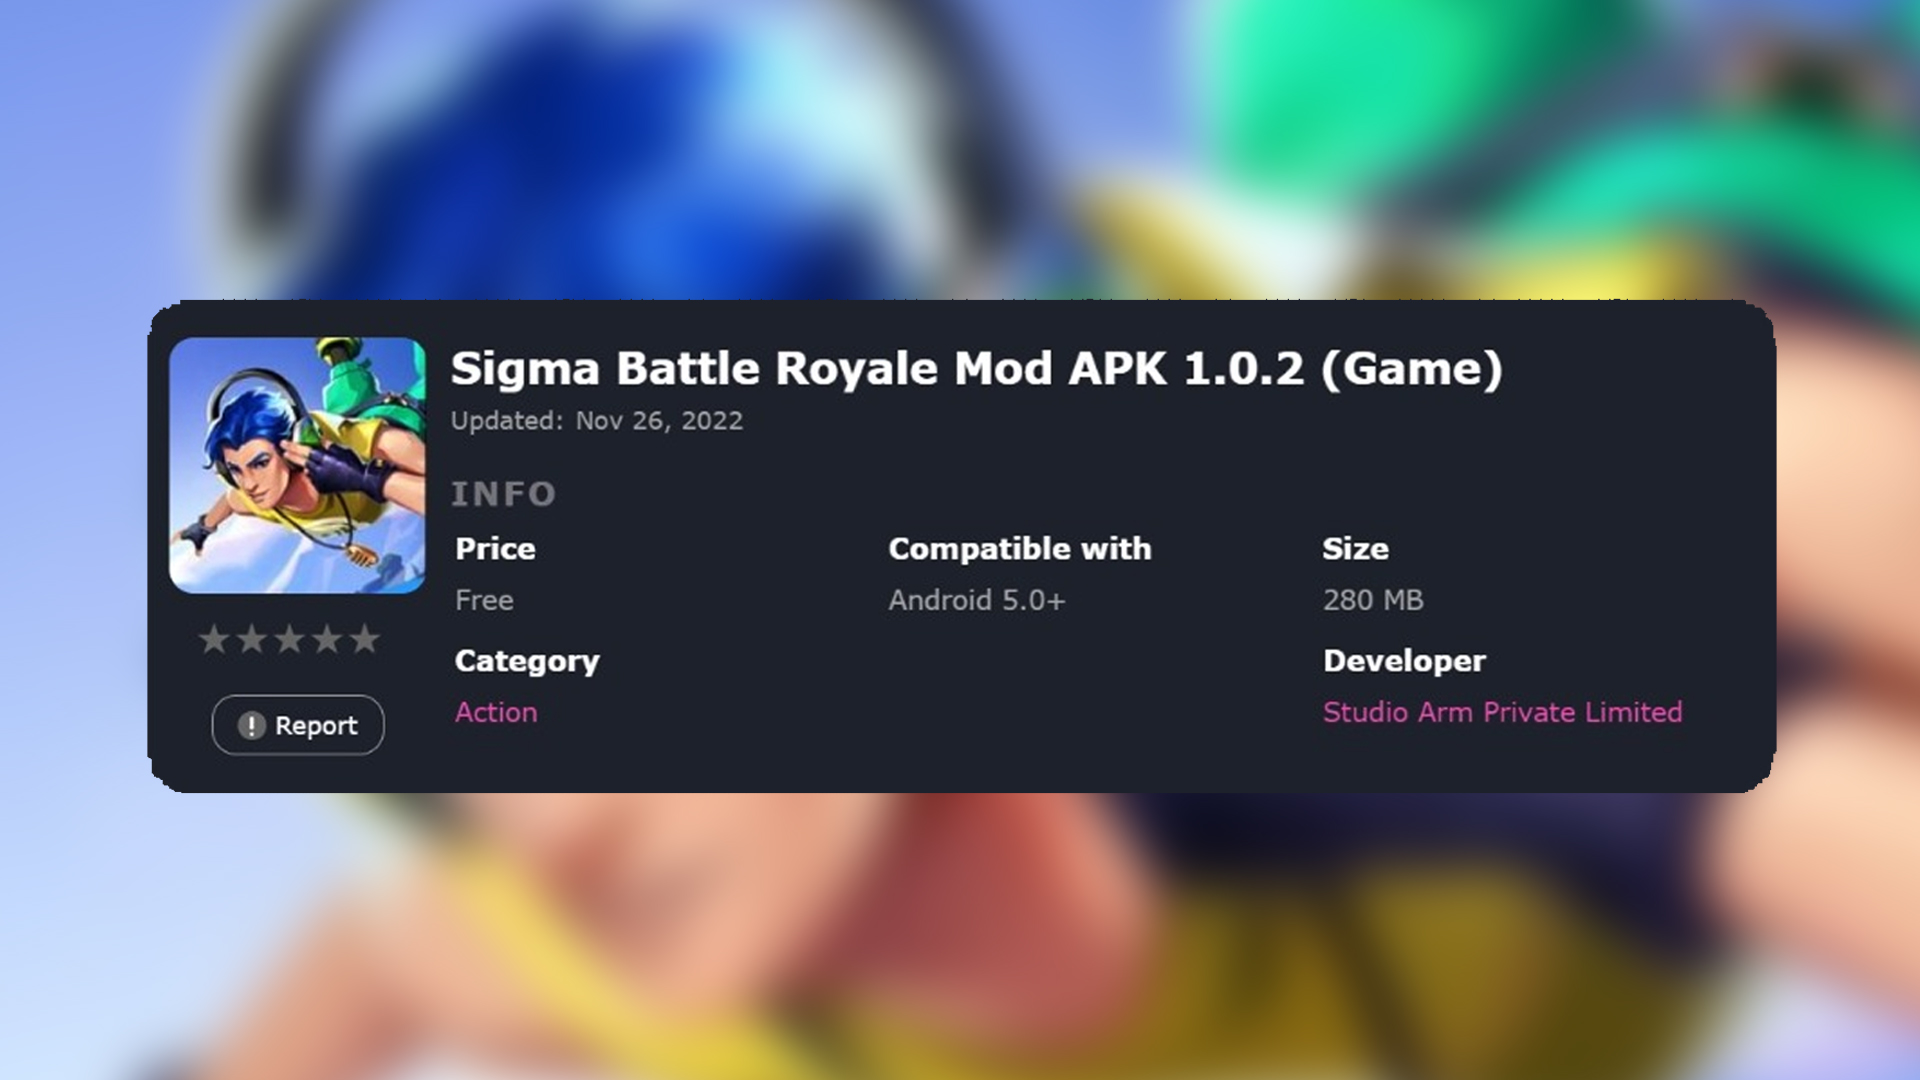 Game Sigma Battle Royale v1.0.2 APK Original 280 MB Dirilis, Begini Cara Download dan Instalnya